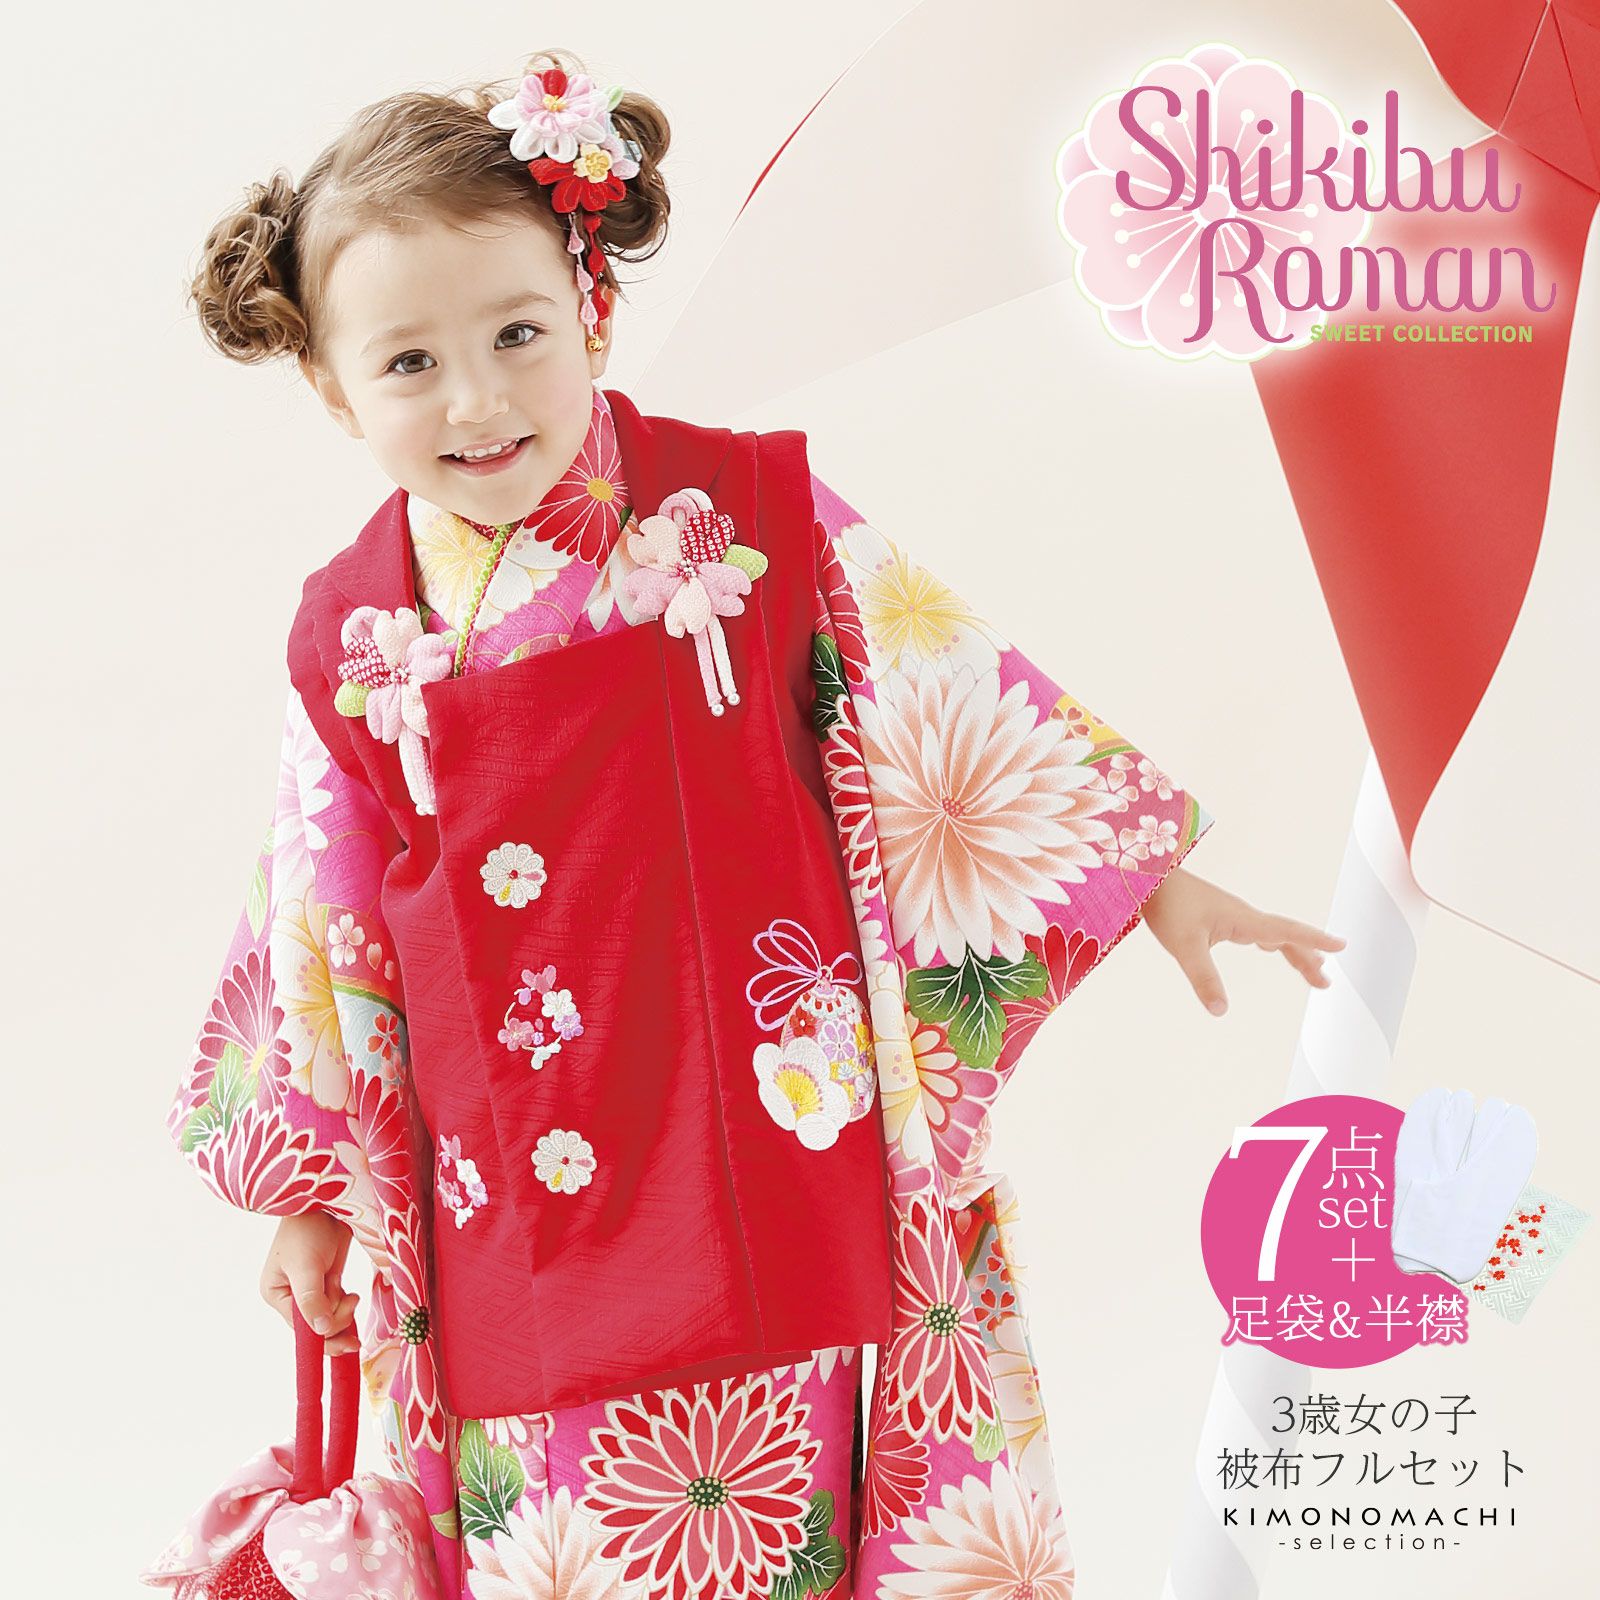 七五三 着物 3歳 ブランド被布セット Shikibu Roman 式部浪漫 「ローズ 菊に手毬」女の子 被布コート 7点フルセットに刺繍半衿